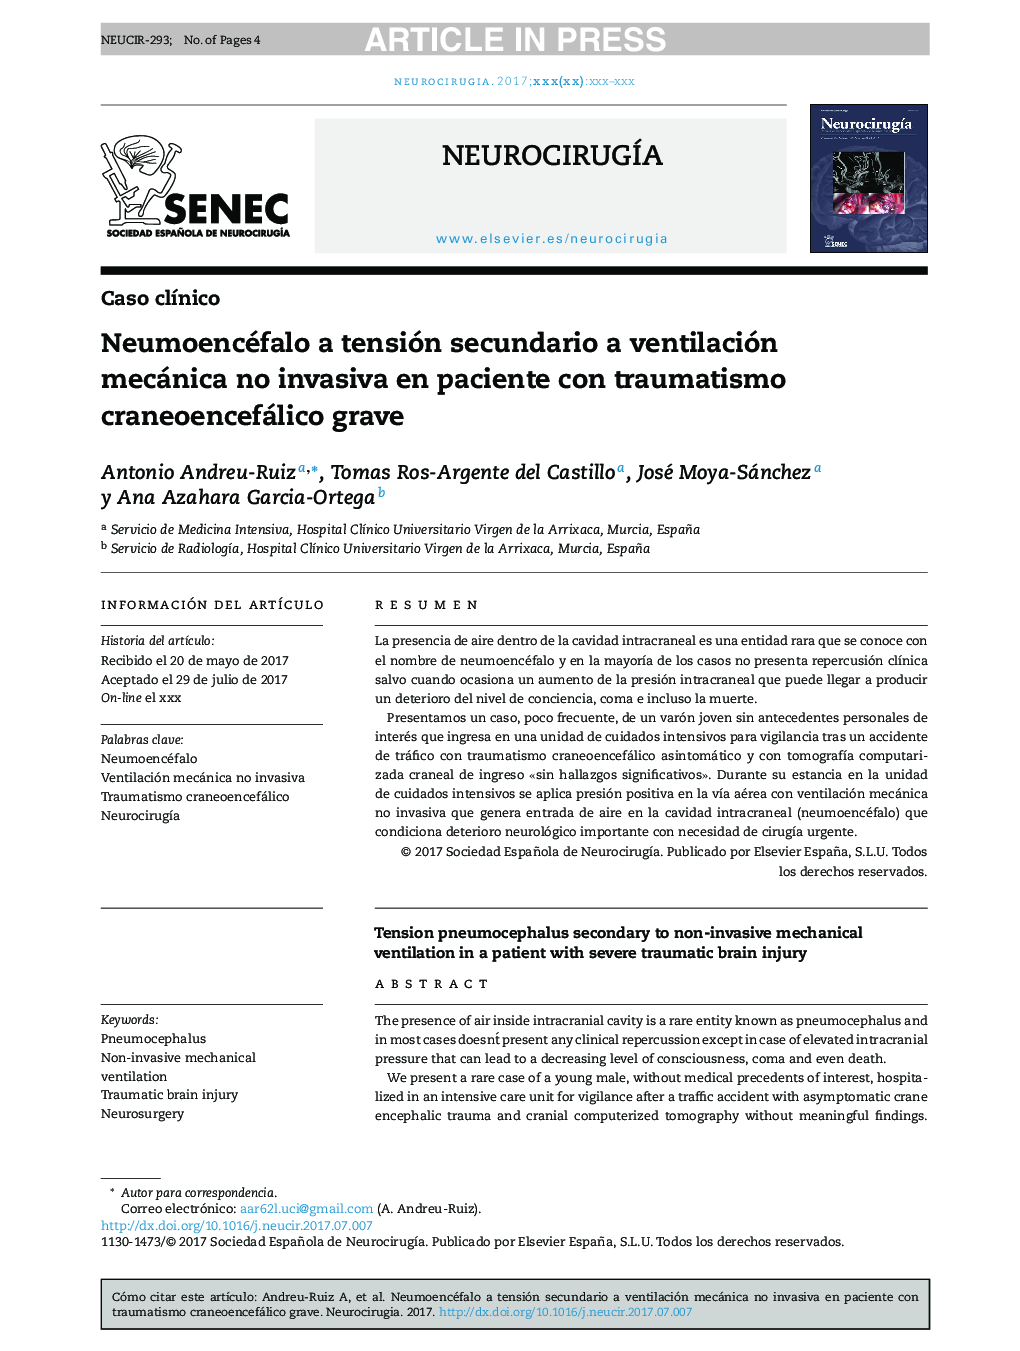 Neumoencéfalo a tensión secundario a ventilación mecánica no invasiva en paciente con traumatismo craneoencefálico grave